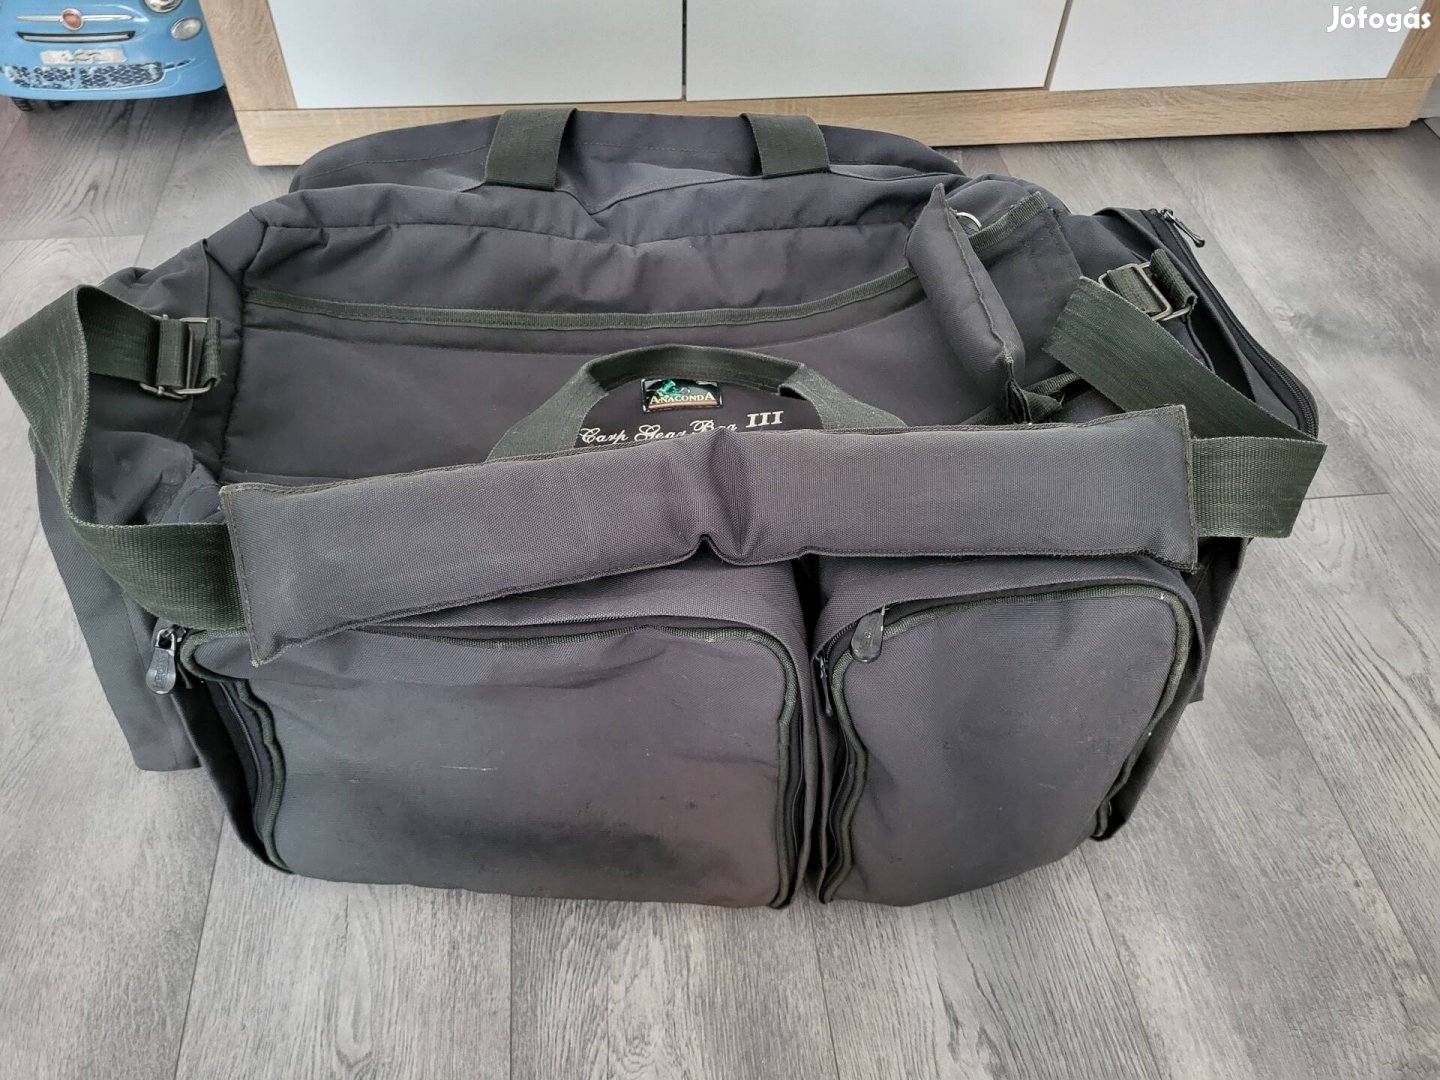 Anaconda Carp Gear Bag 3 horgásztáska,bojlis táska